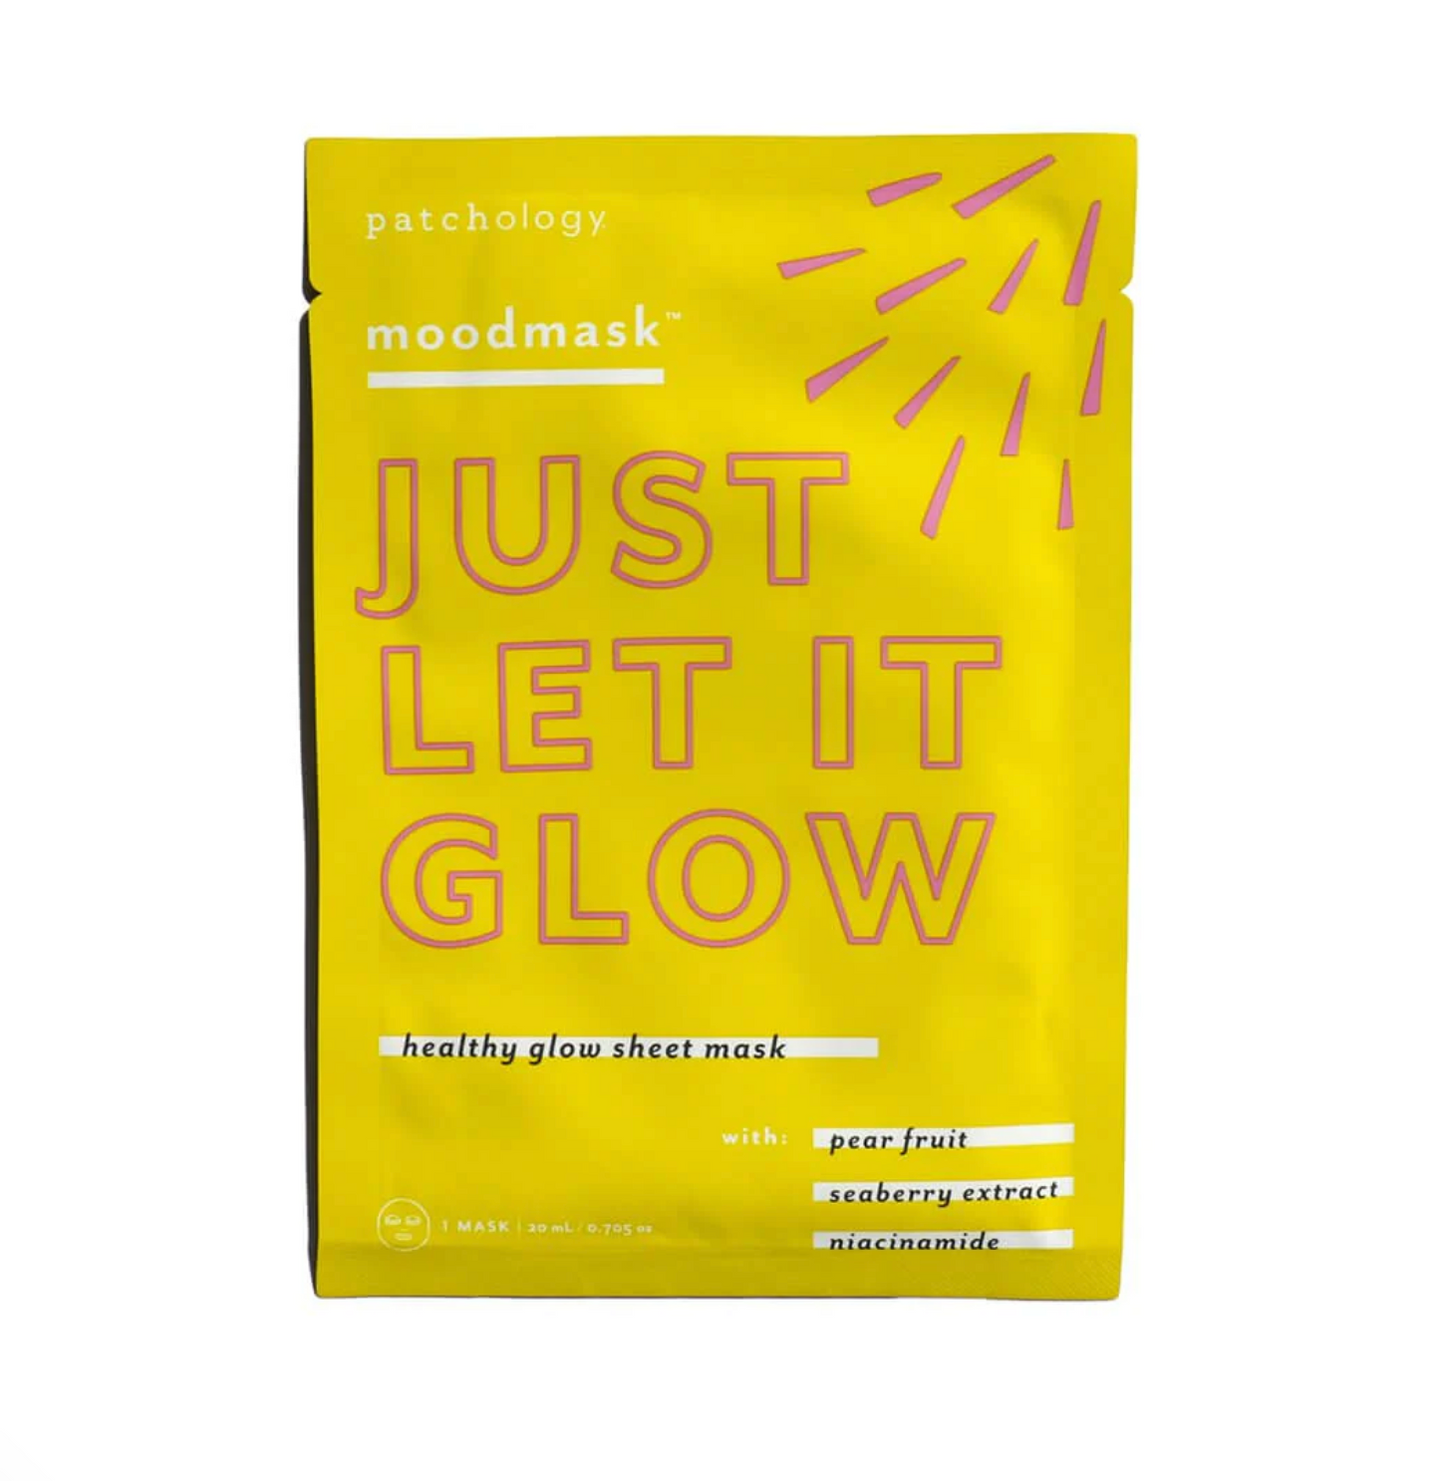 Moodmask - Just Let It Glow